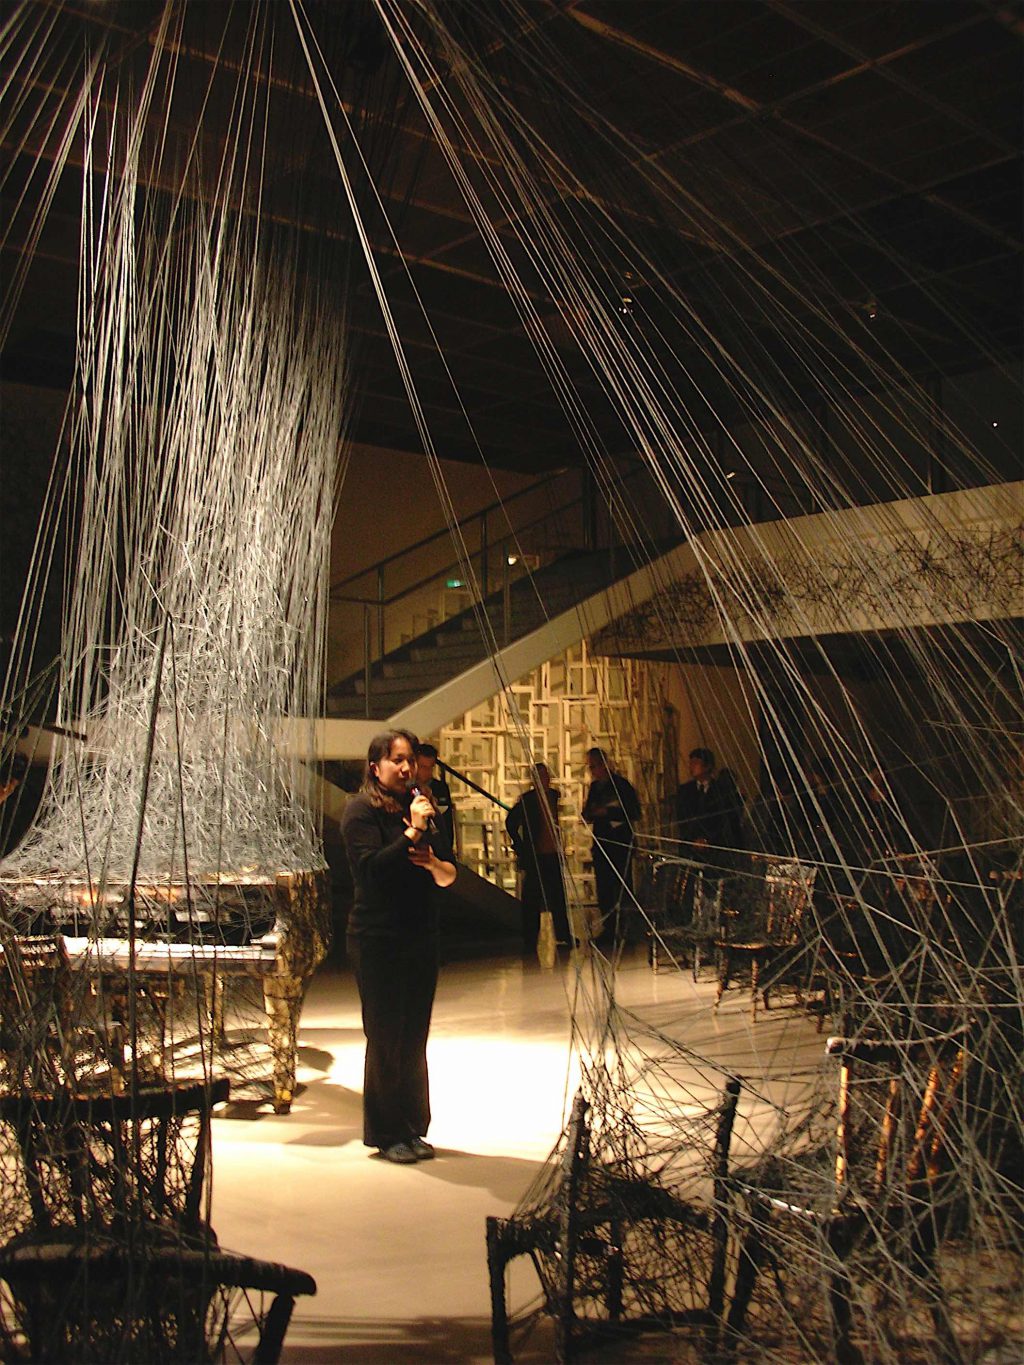 塩田千春 SHIOTA Chiharu「From In Silence」展、神奈川県民ホール Kanagawa Kenmin Hall, 2007年10月18日